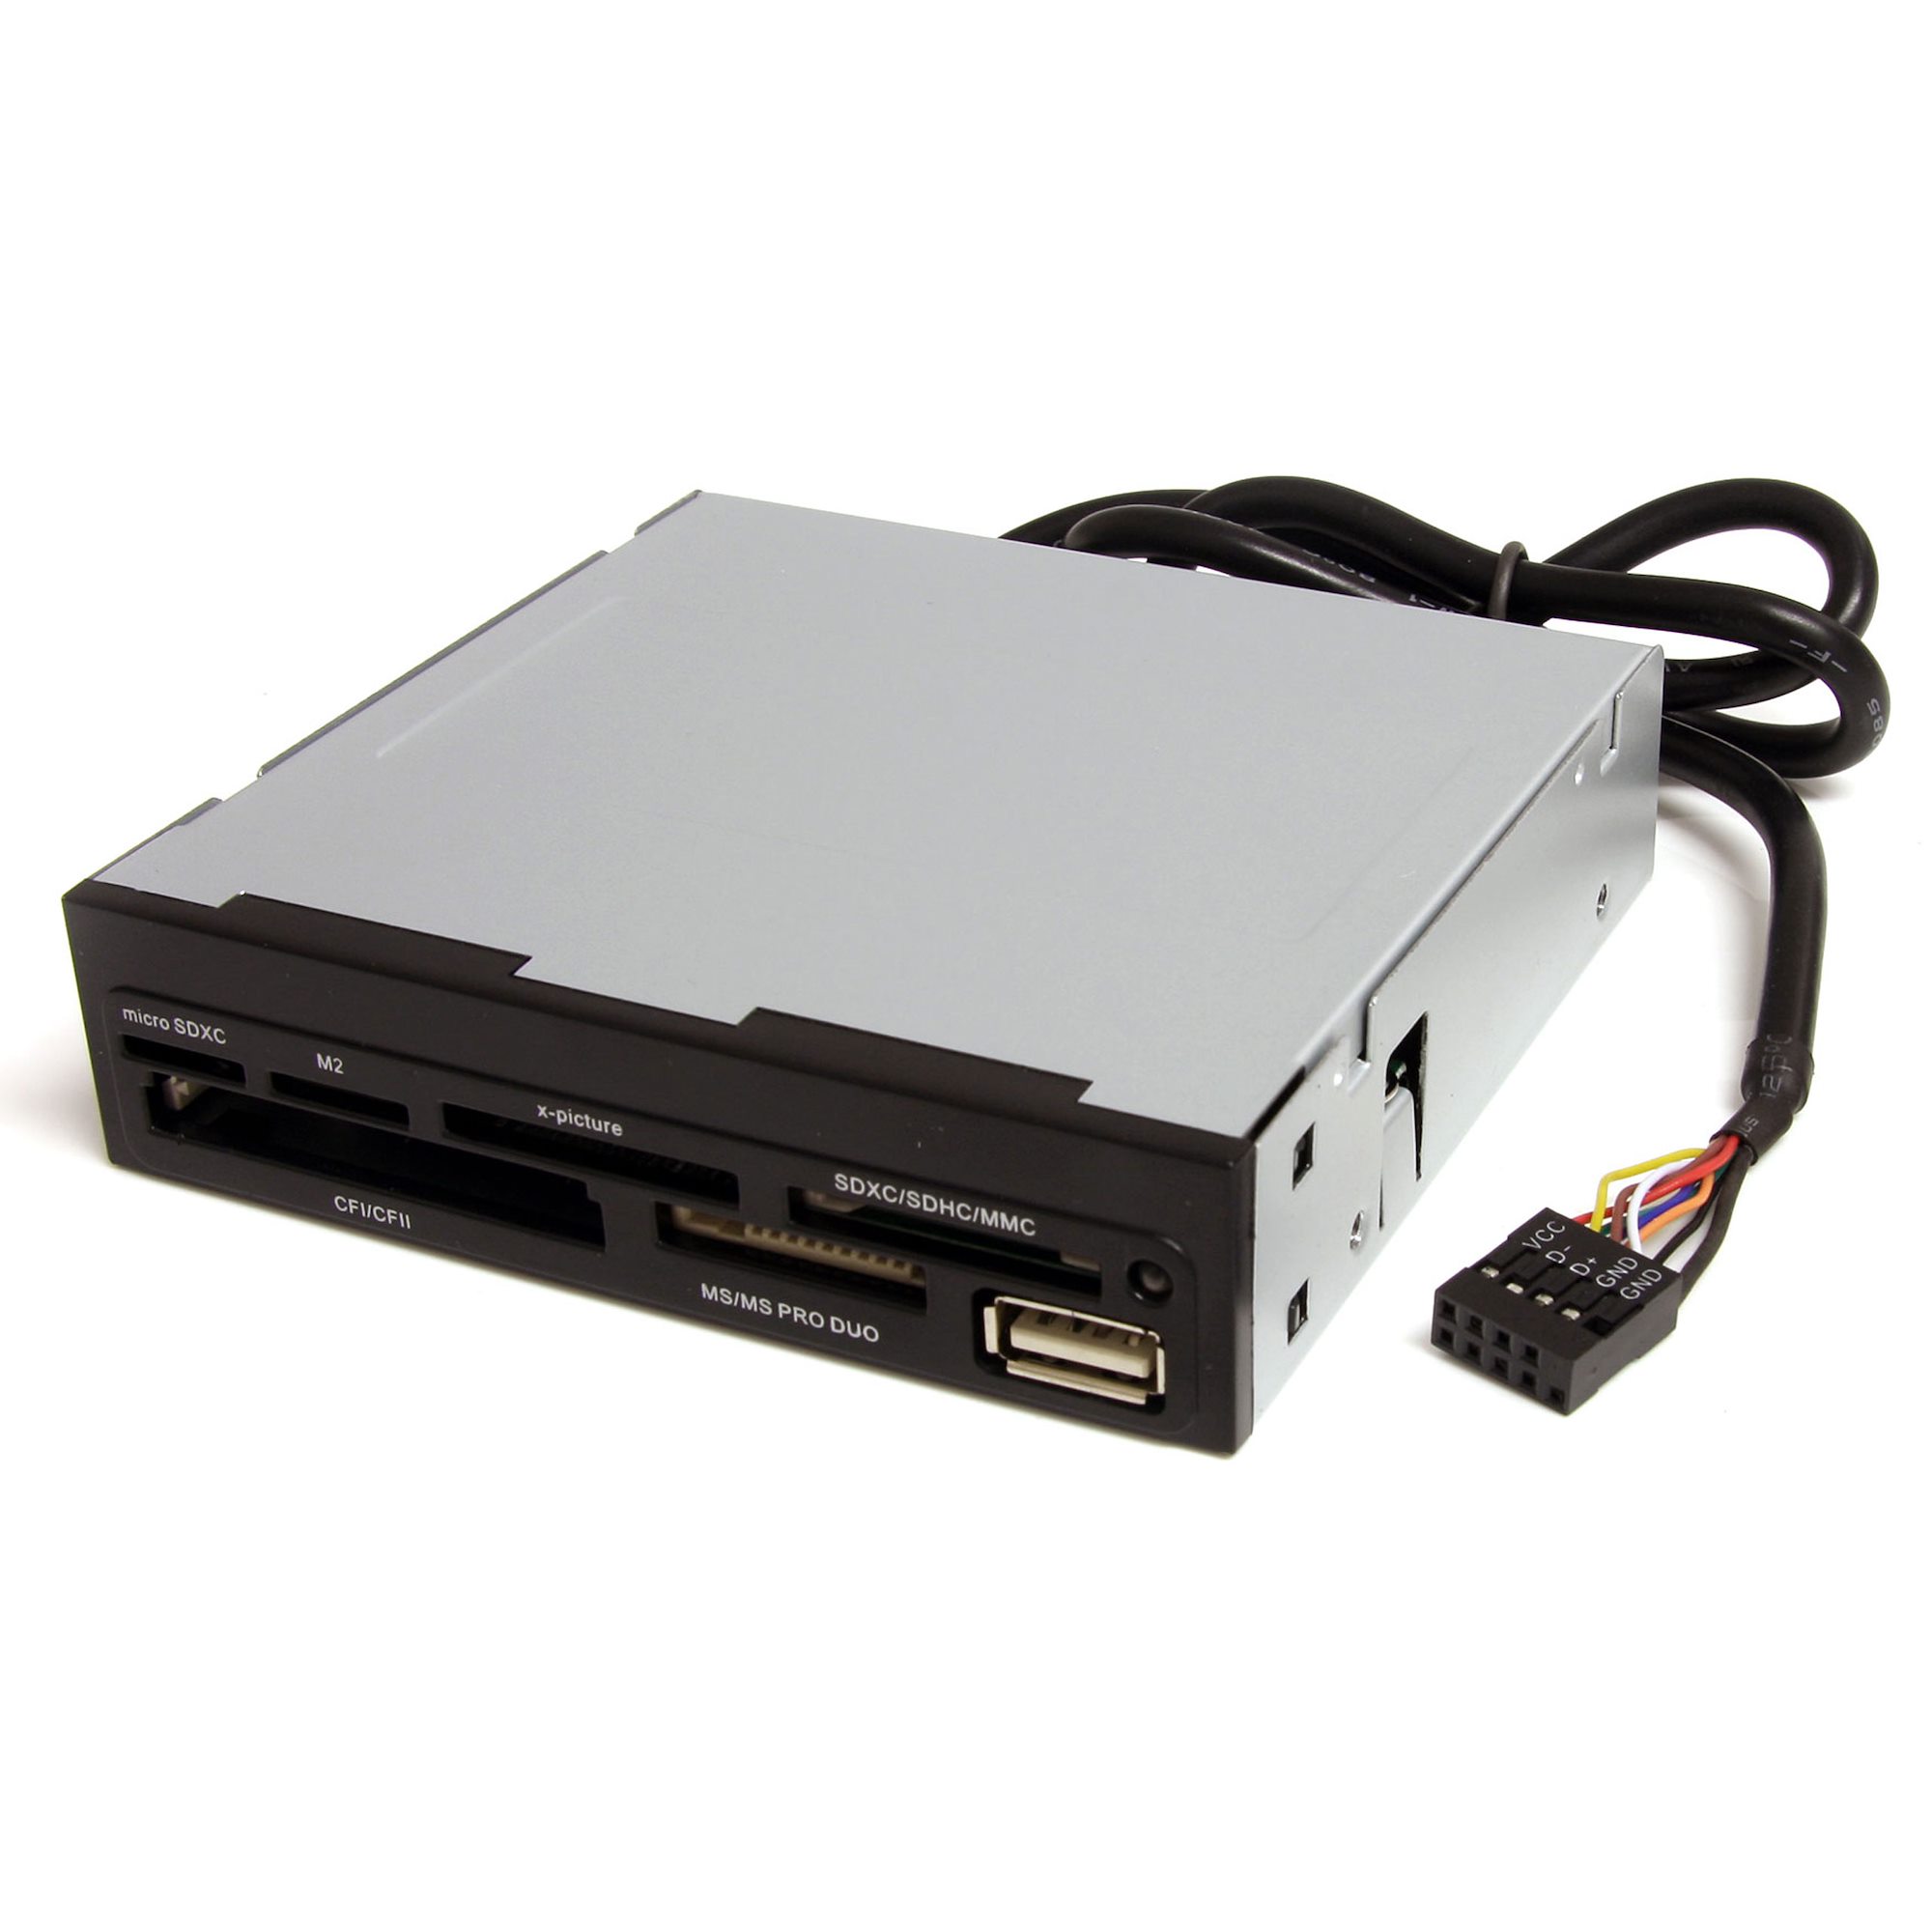 StarTech.com Lecteur de cartes memoire interne de 3,5 pouces avec port USB  2.0 - Lecteur multicartes 22-en-1 pour PC - Noir (35FCREADBK3)